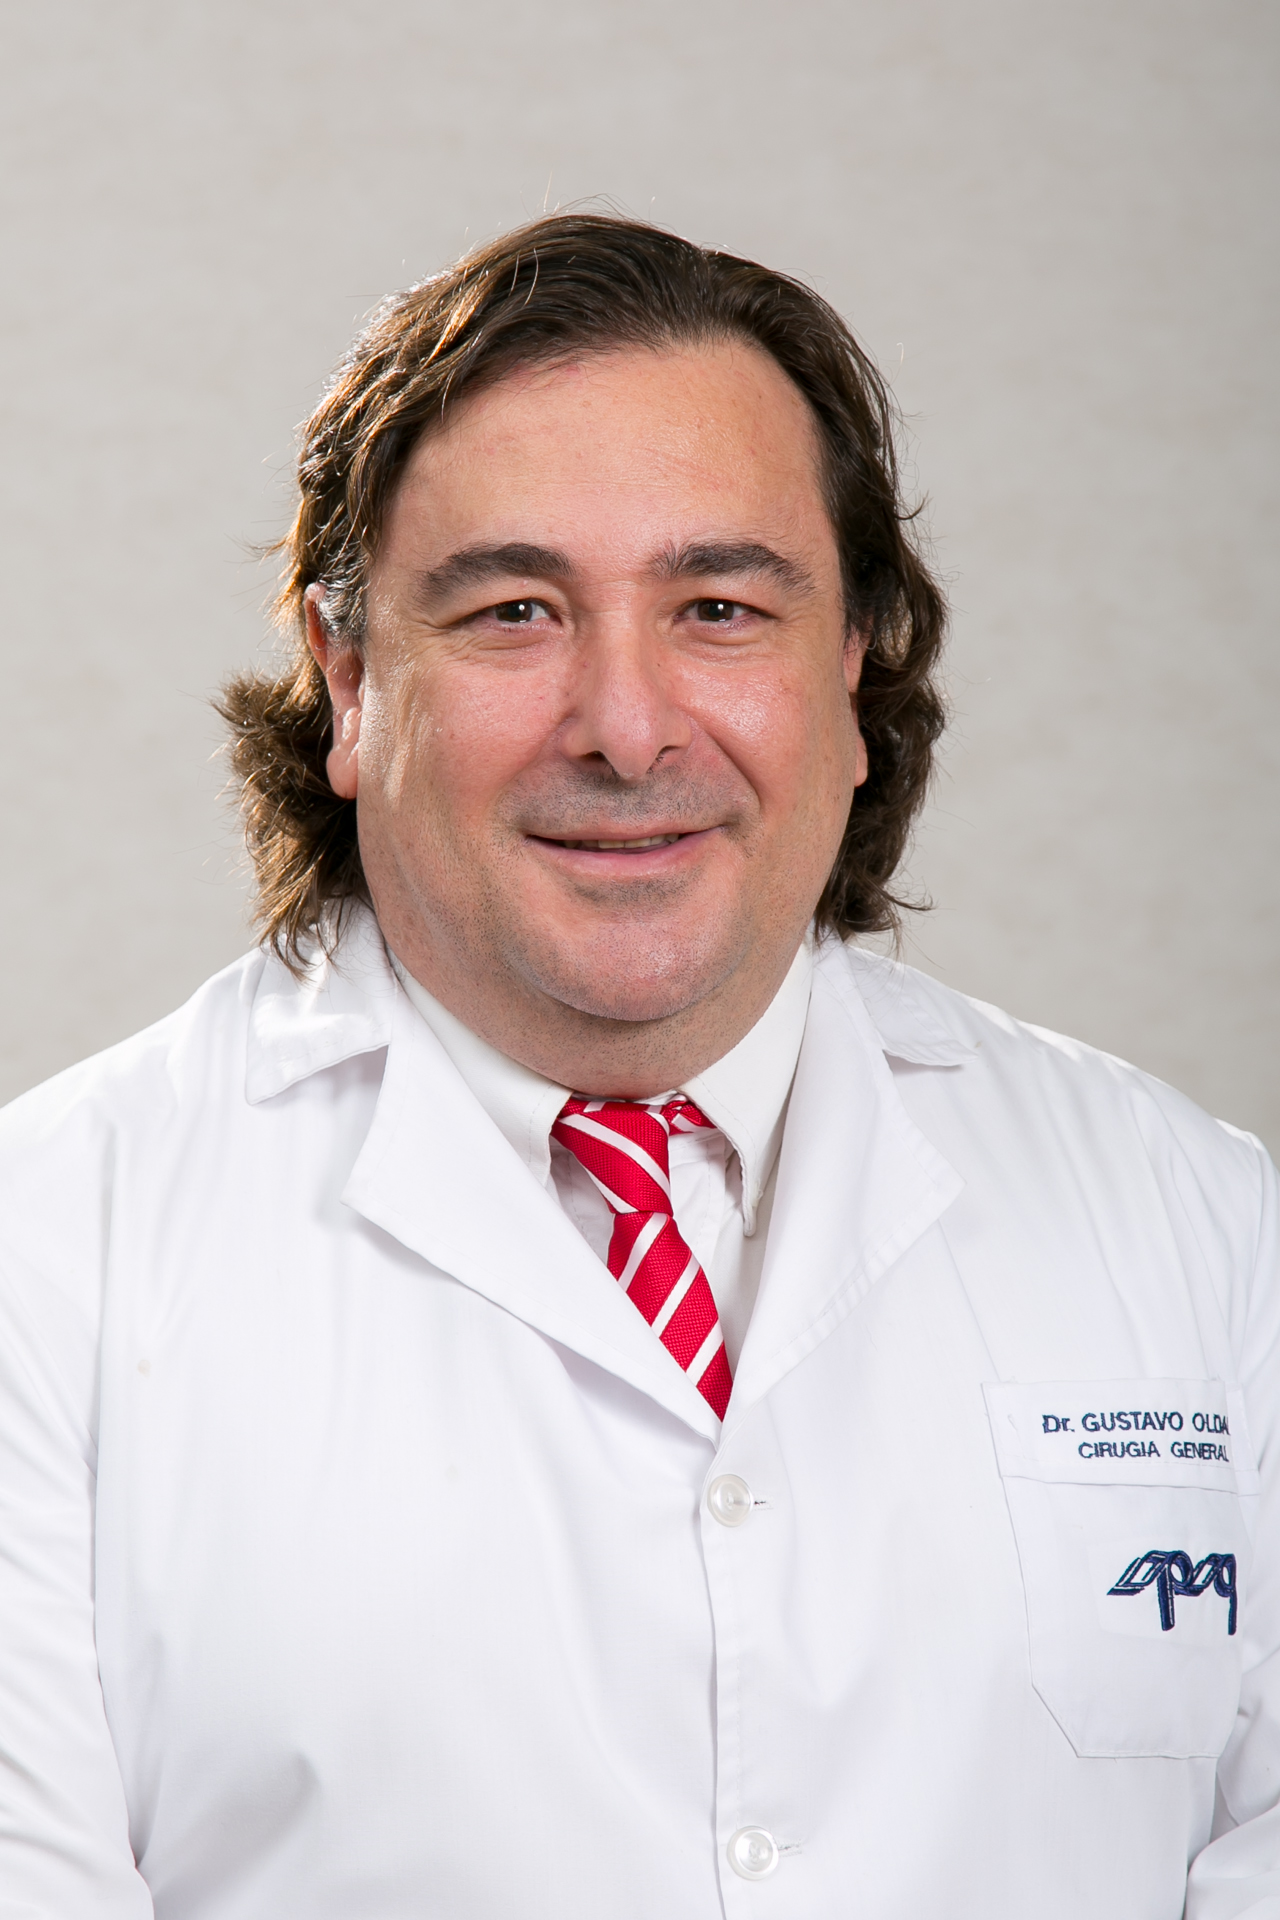 Dr. Oldani Gustavo